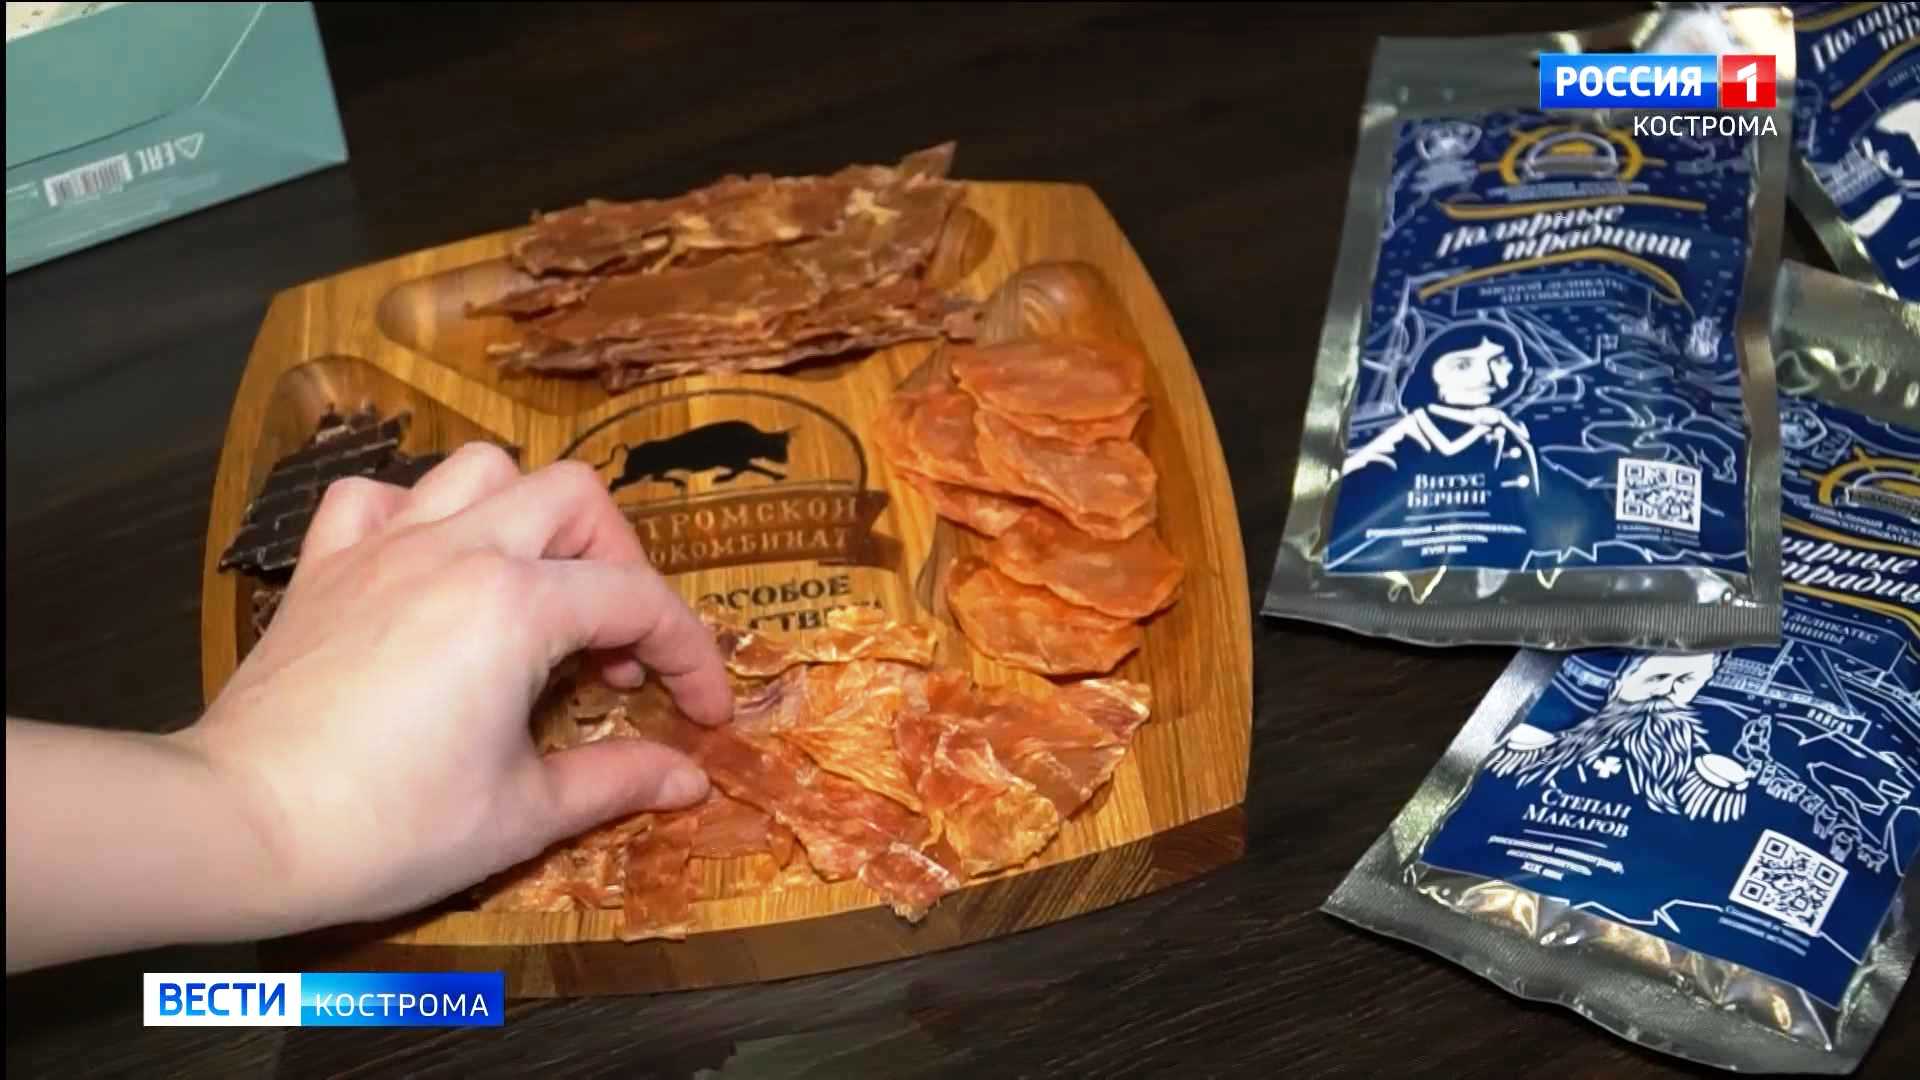 Мясо для путешественников начали производить в Костроме